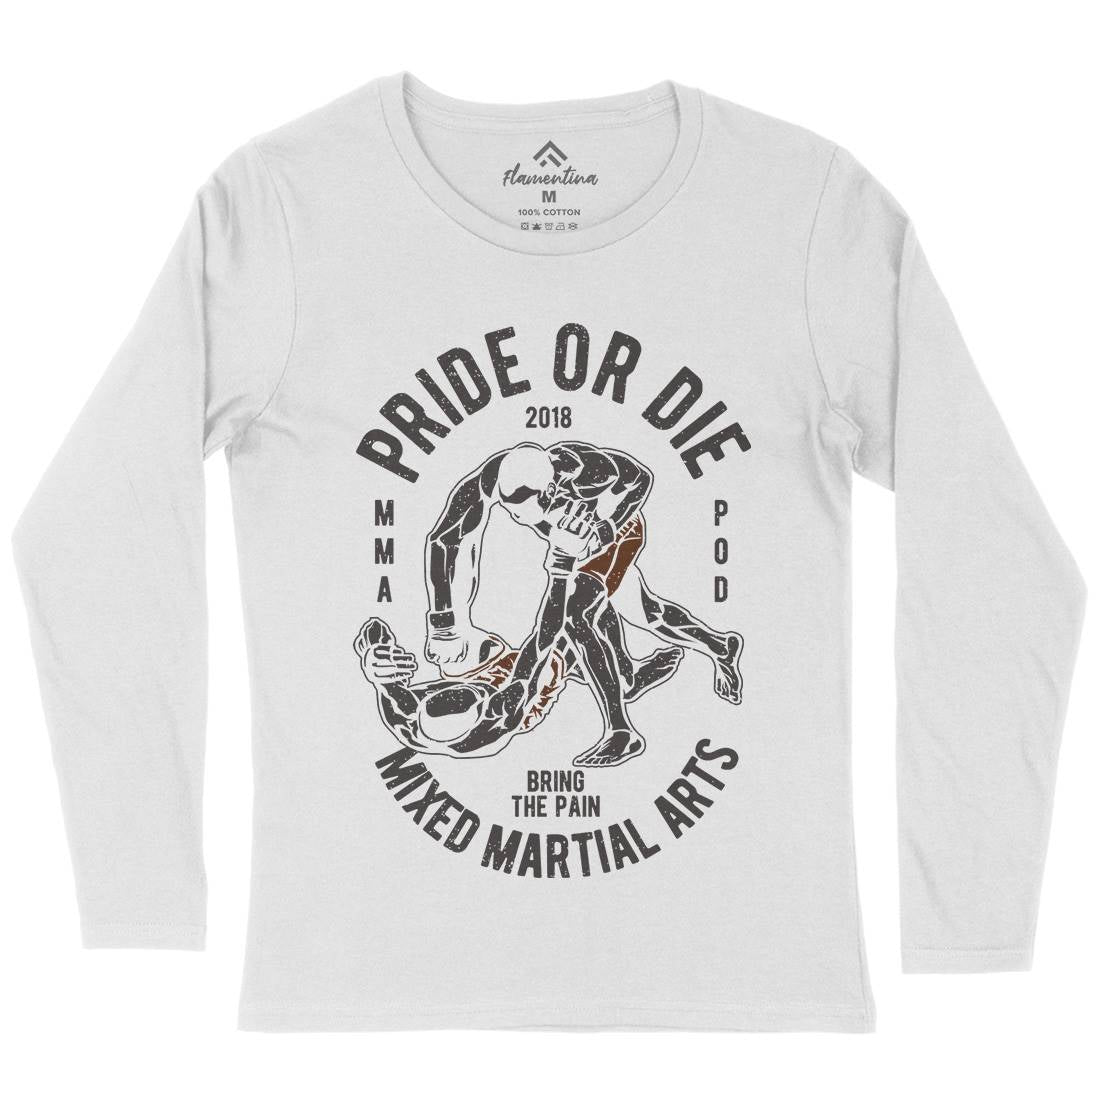 Pride Or Die Womens Long Sleeve T-Shirt Sport A735